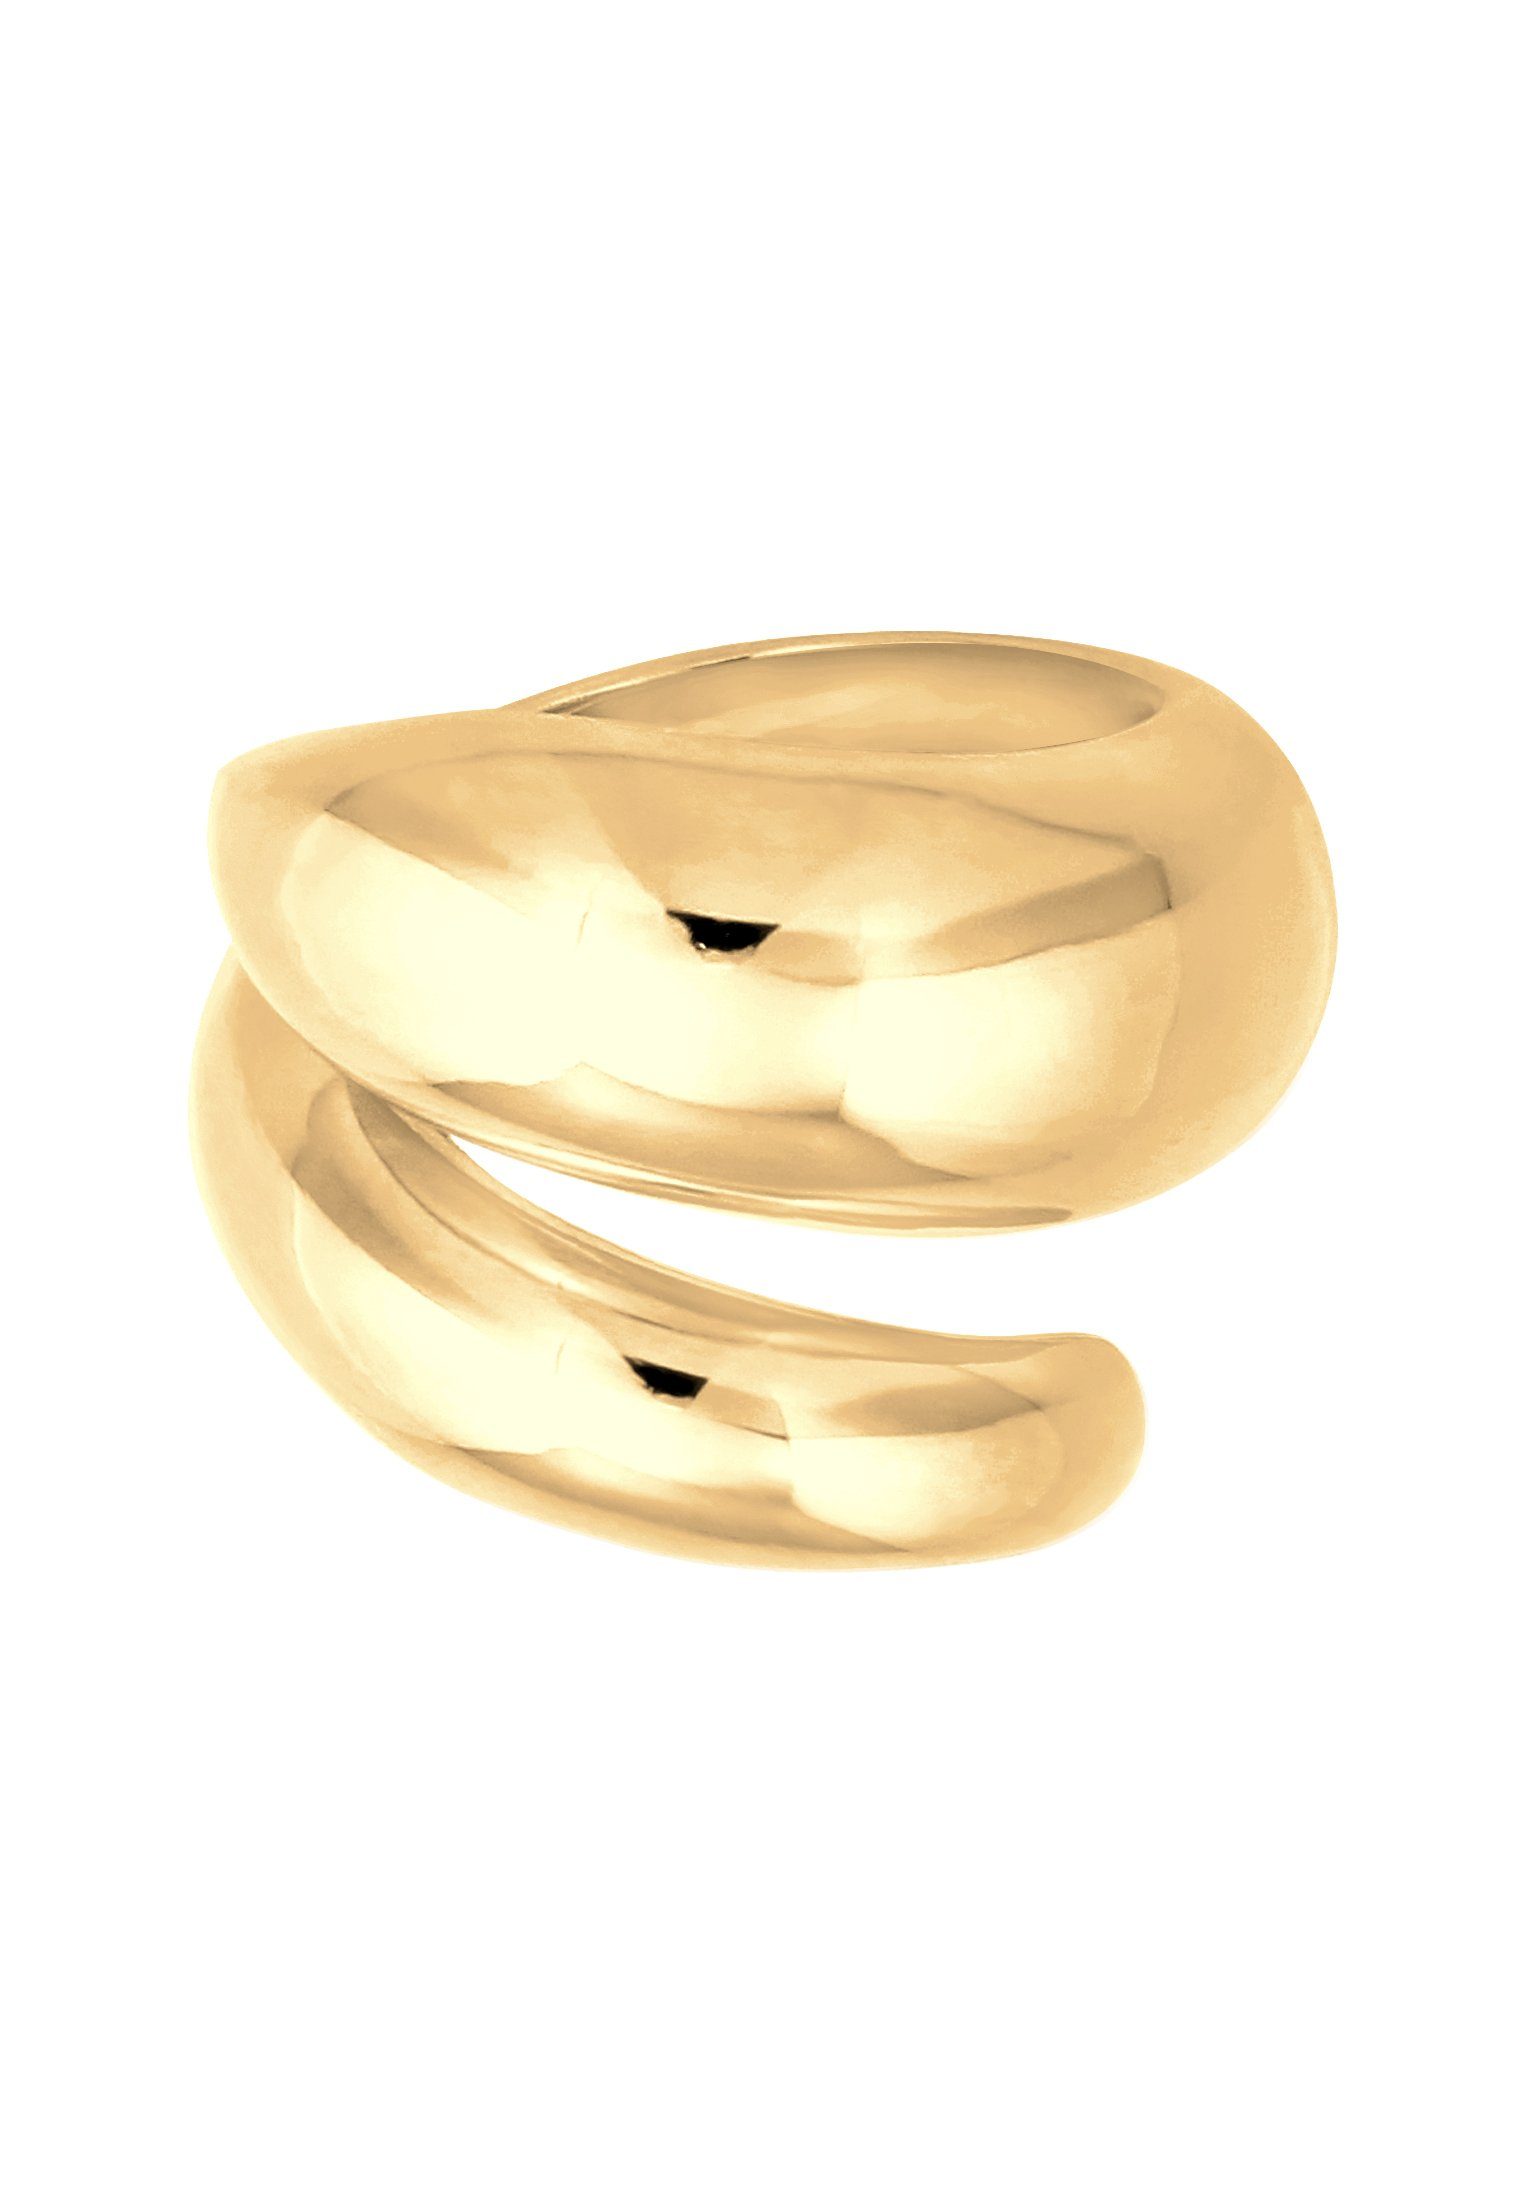 Silber Gold Nenalina Spiral 925 Fingerring Wickelring Fingerschmuck